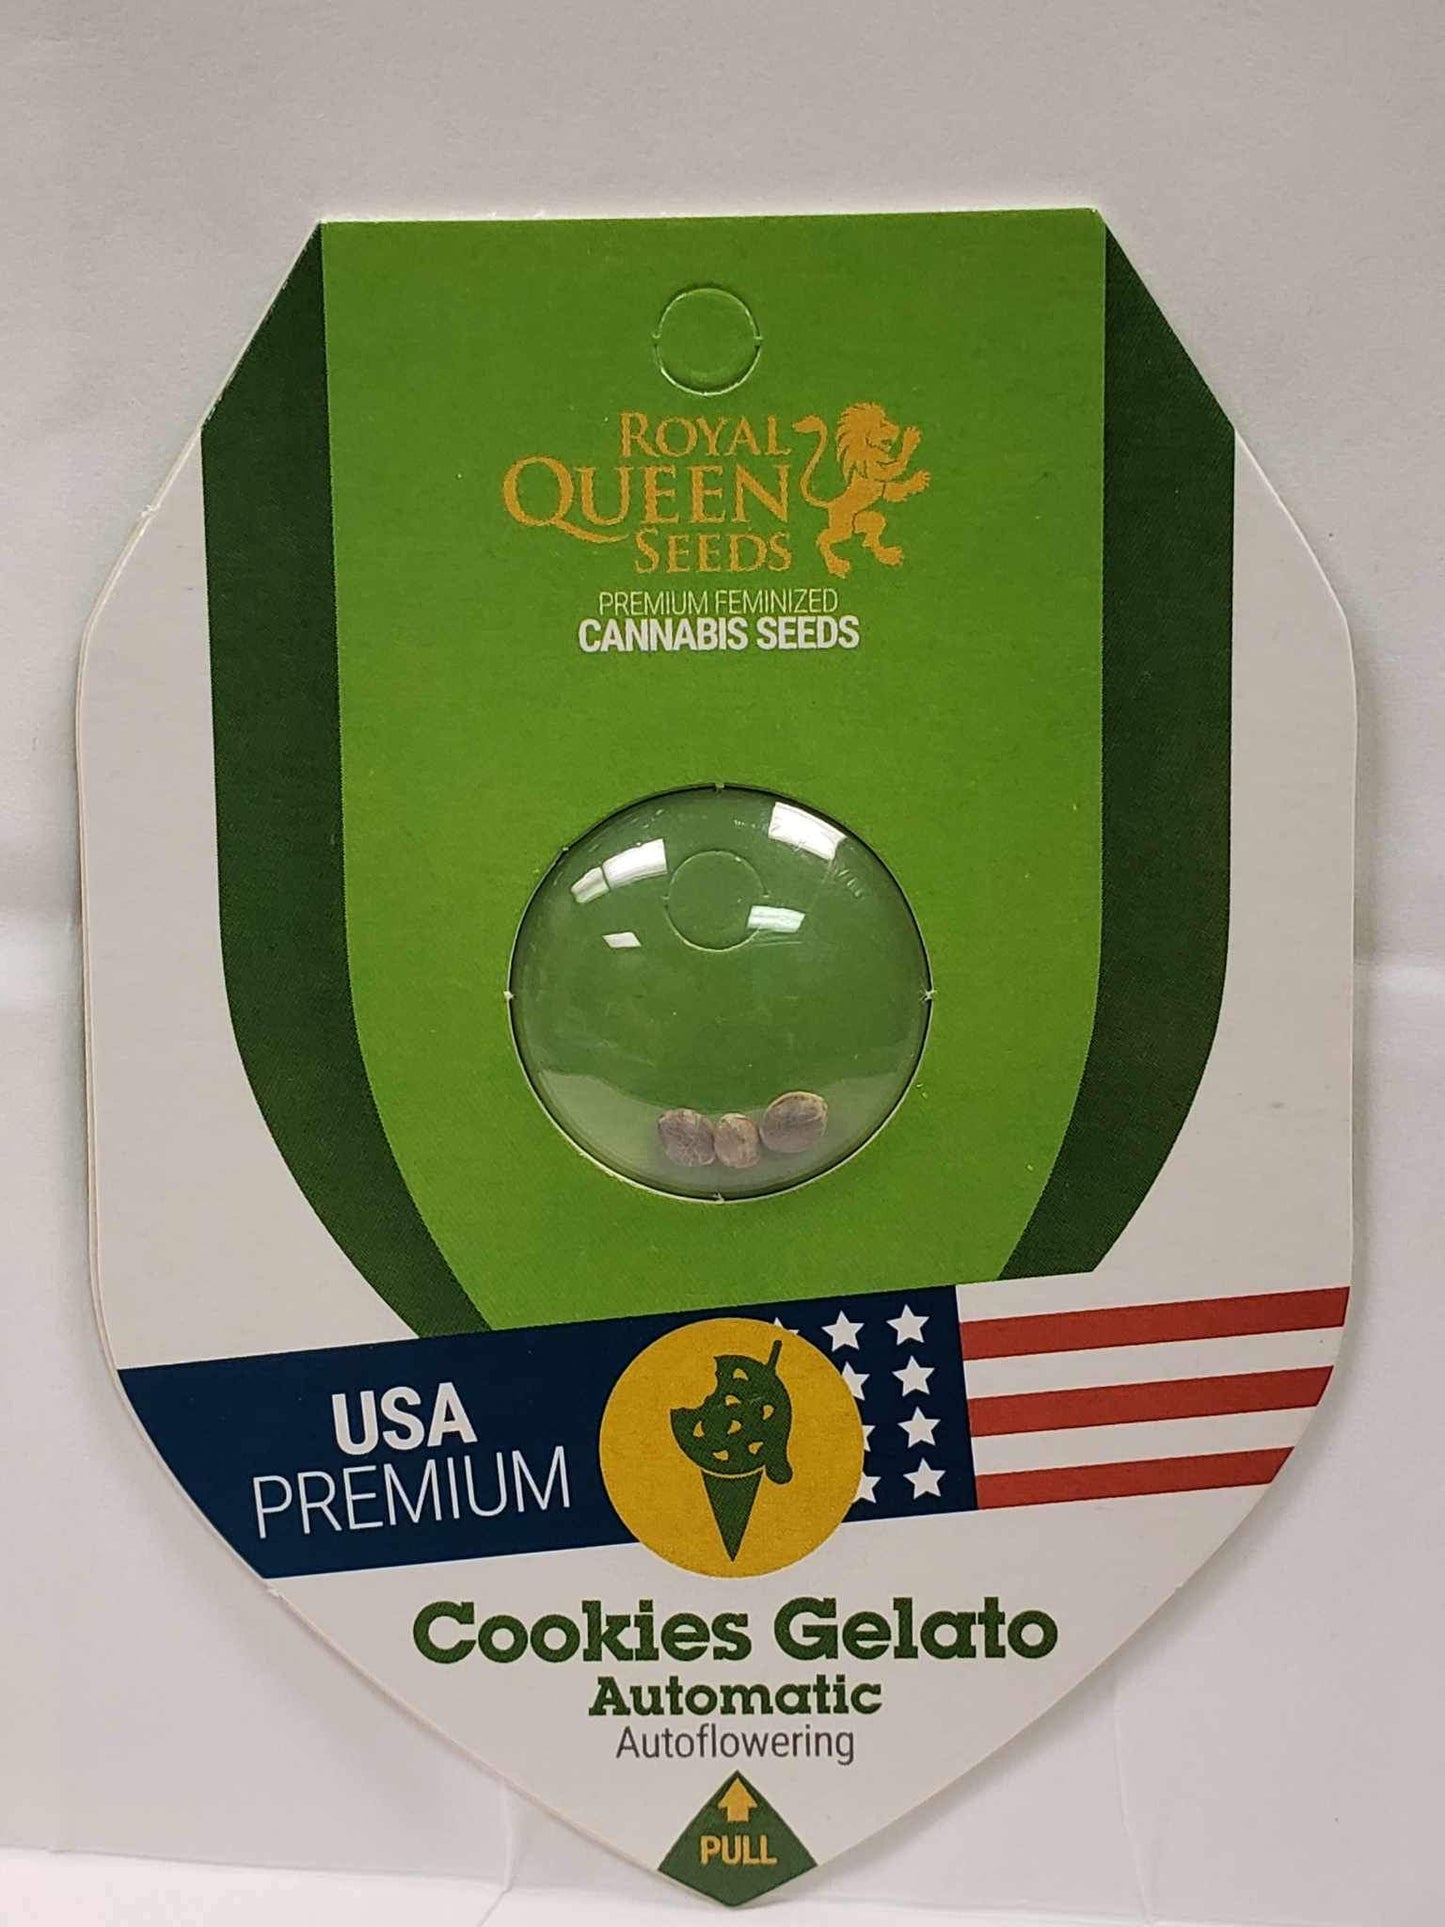 Royal Queen Cookie Gelato Auto Seeds